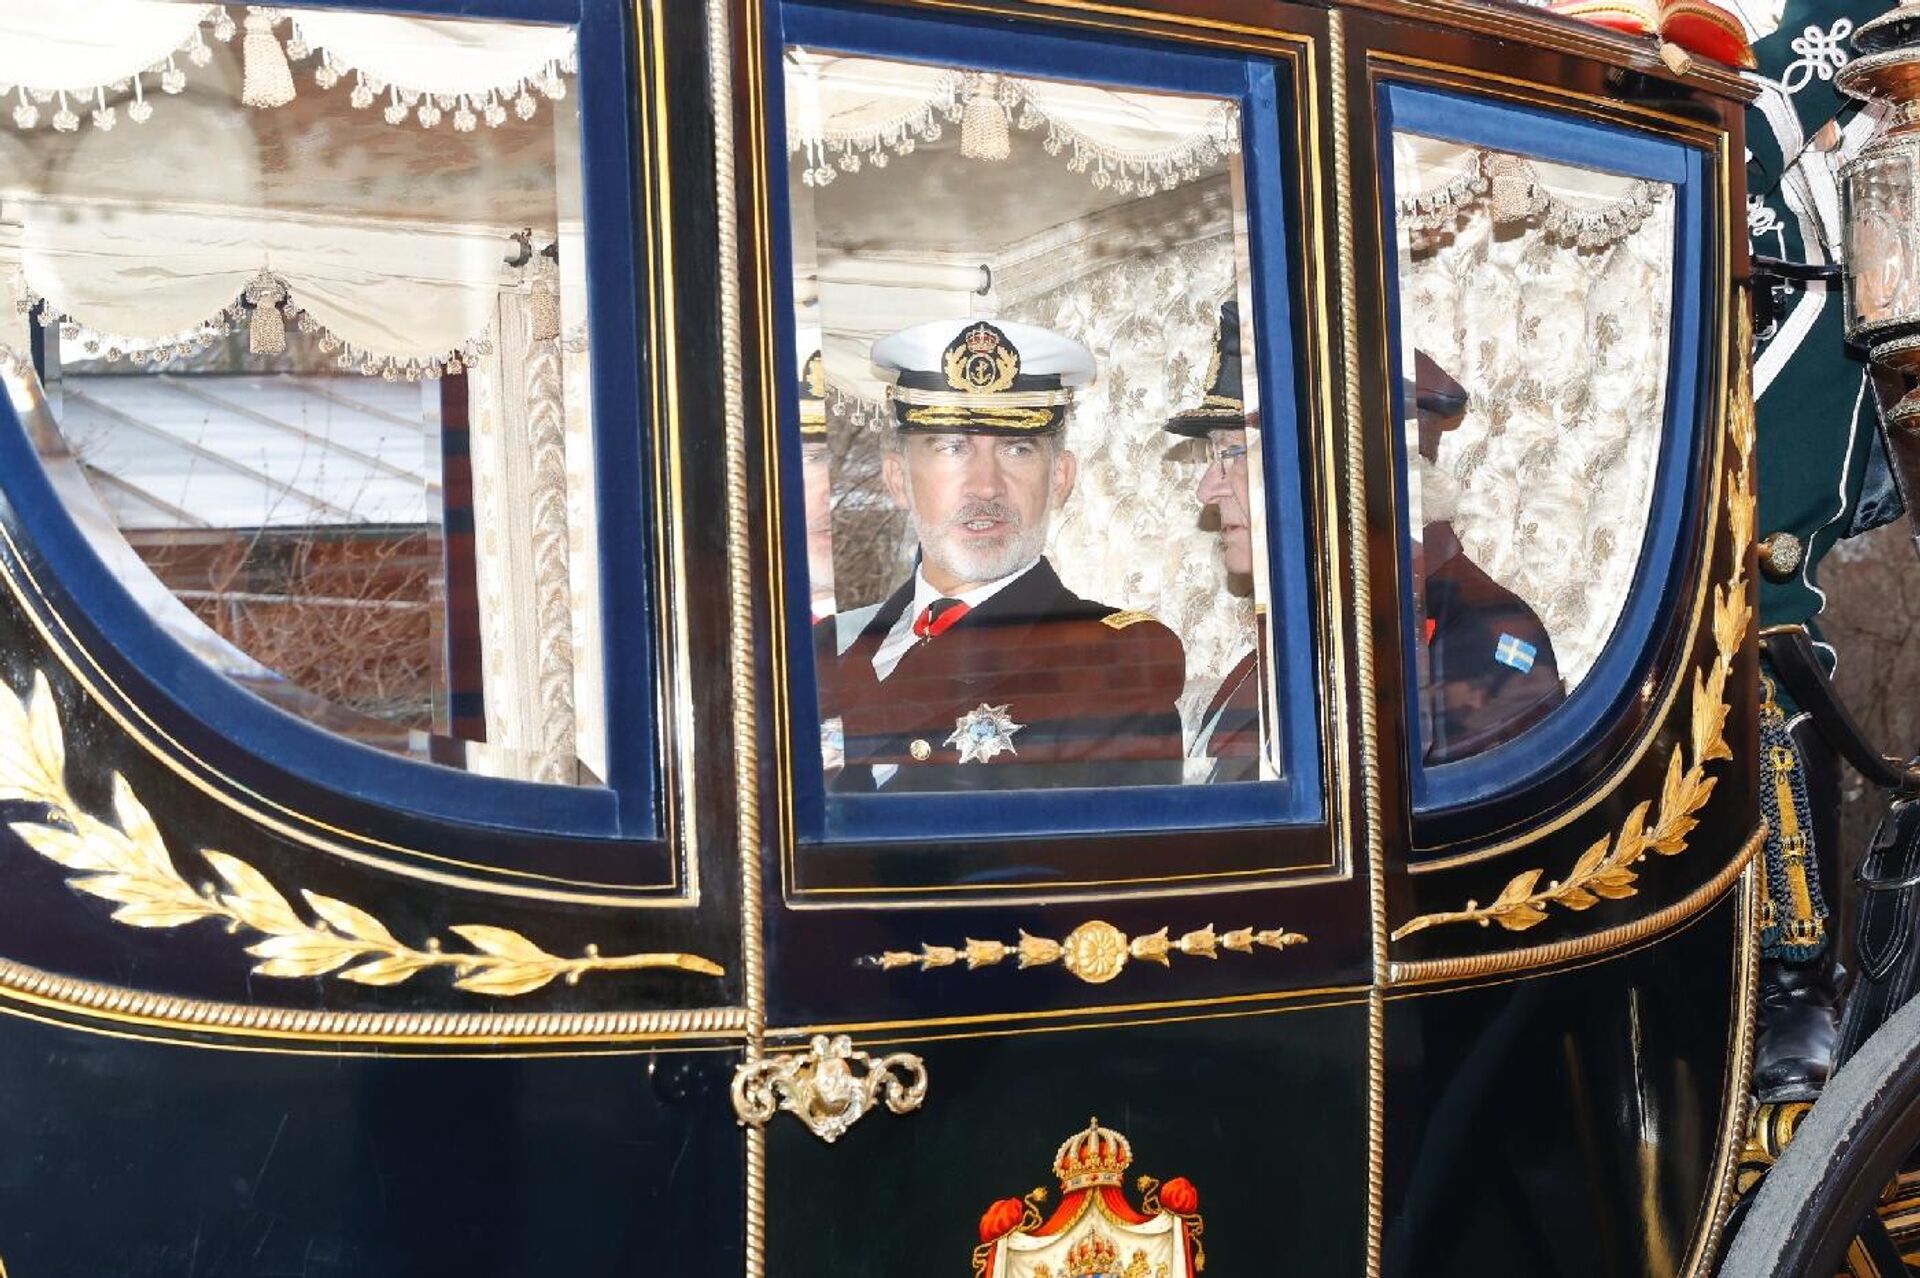 El rey de España acompañado por el rey de Suecia en el carruaje camino al Palacio Real de Estocolmo - Sputnik Mundo, 1920, 24.11.2021